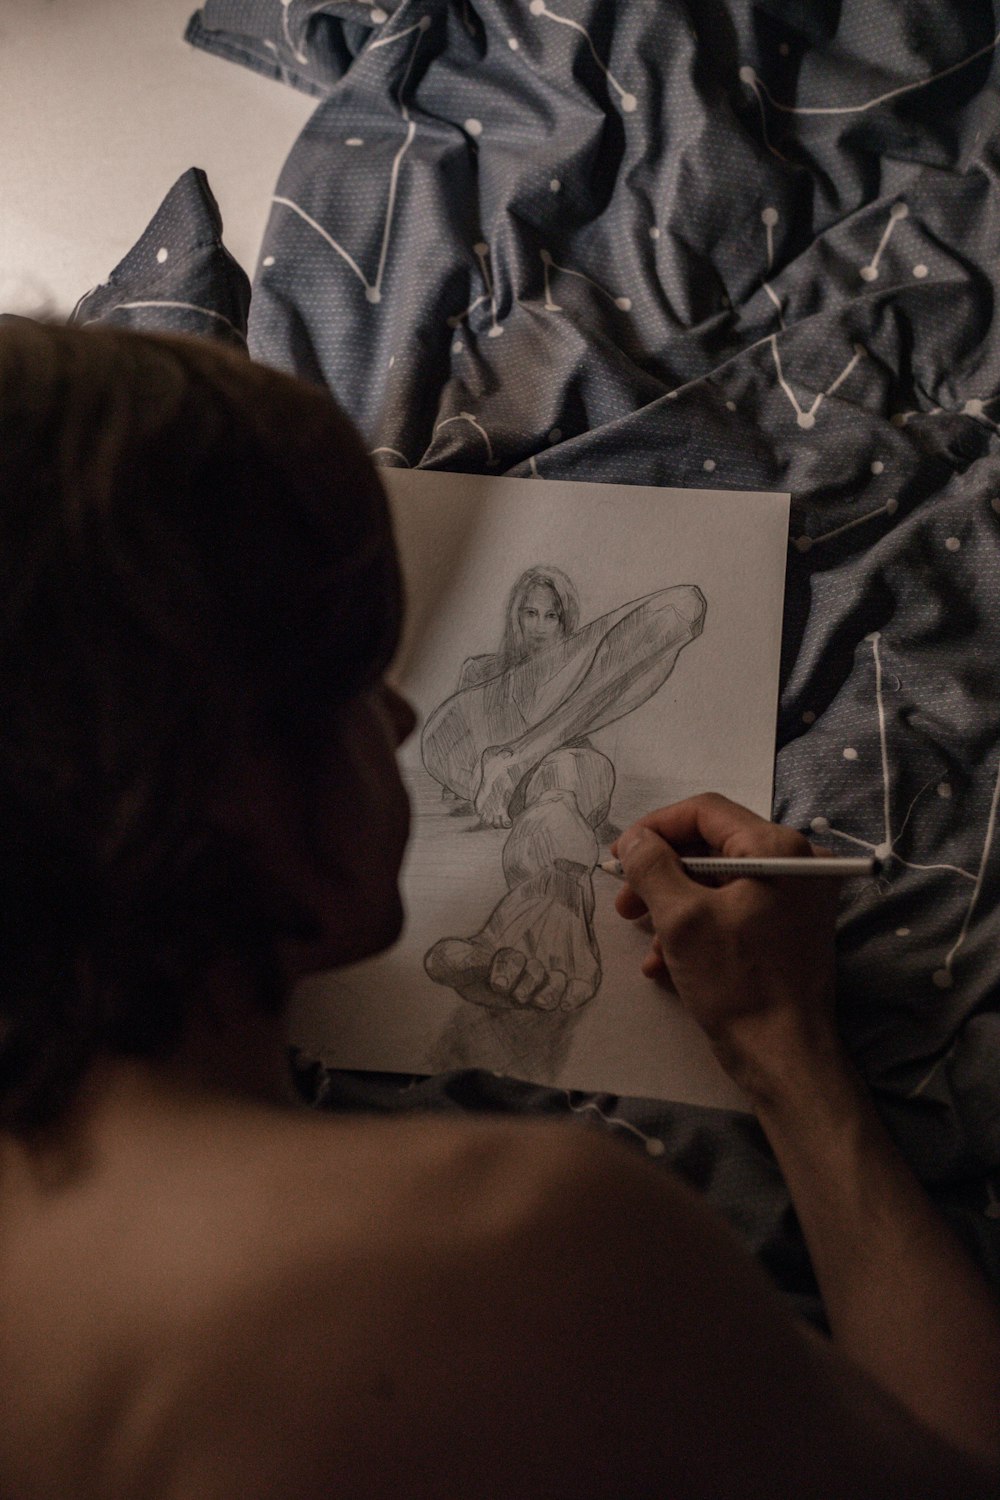 Una mujer está dibujando una imagen en una hoja de papel